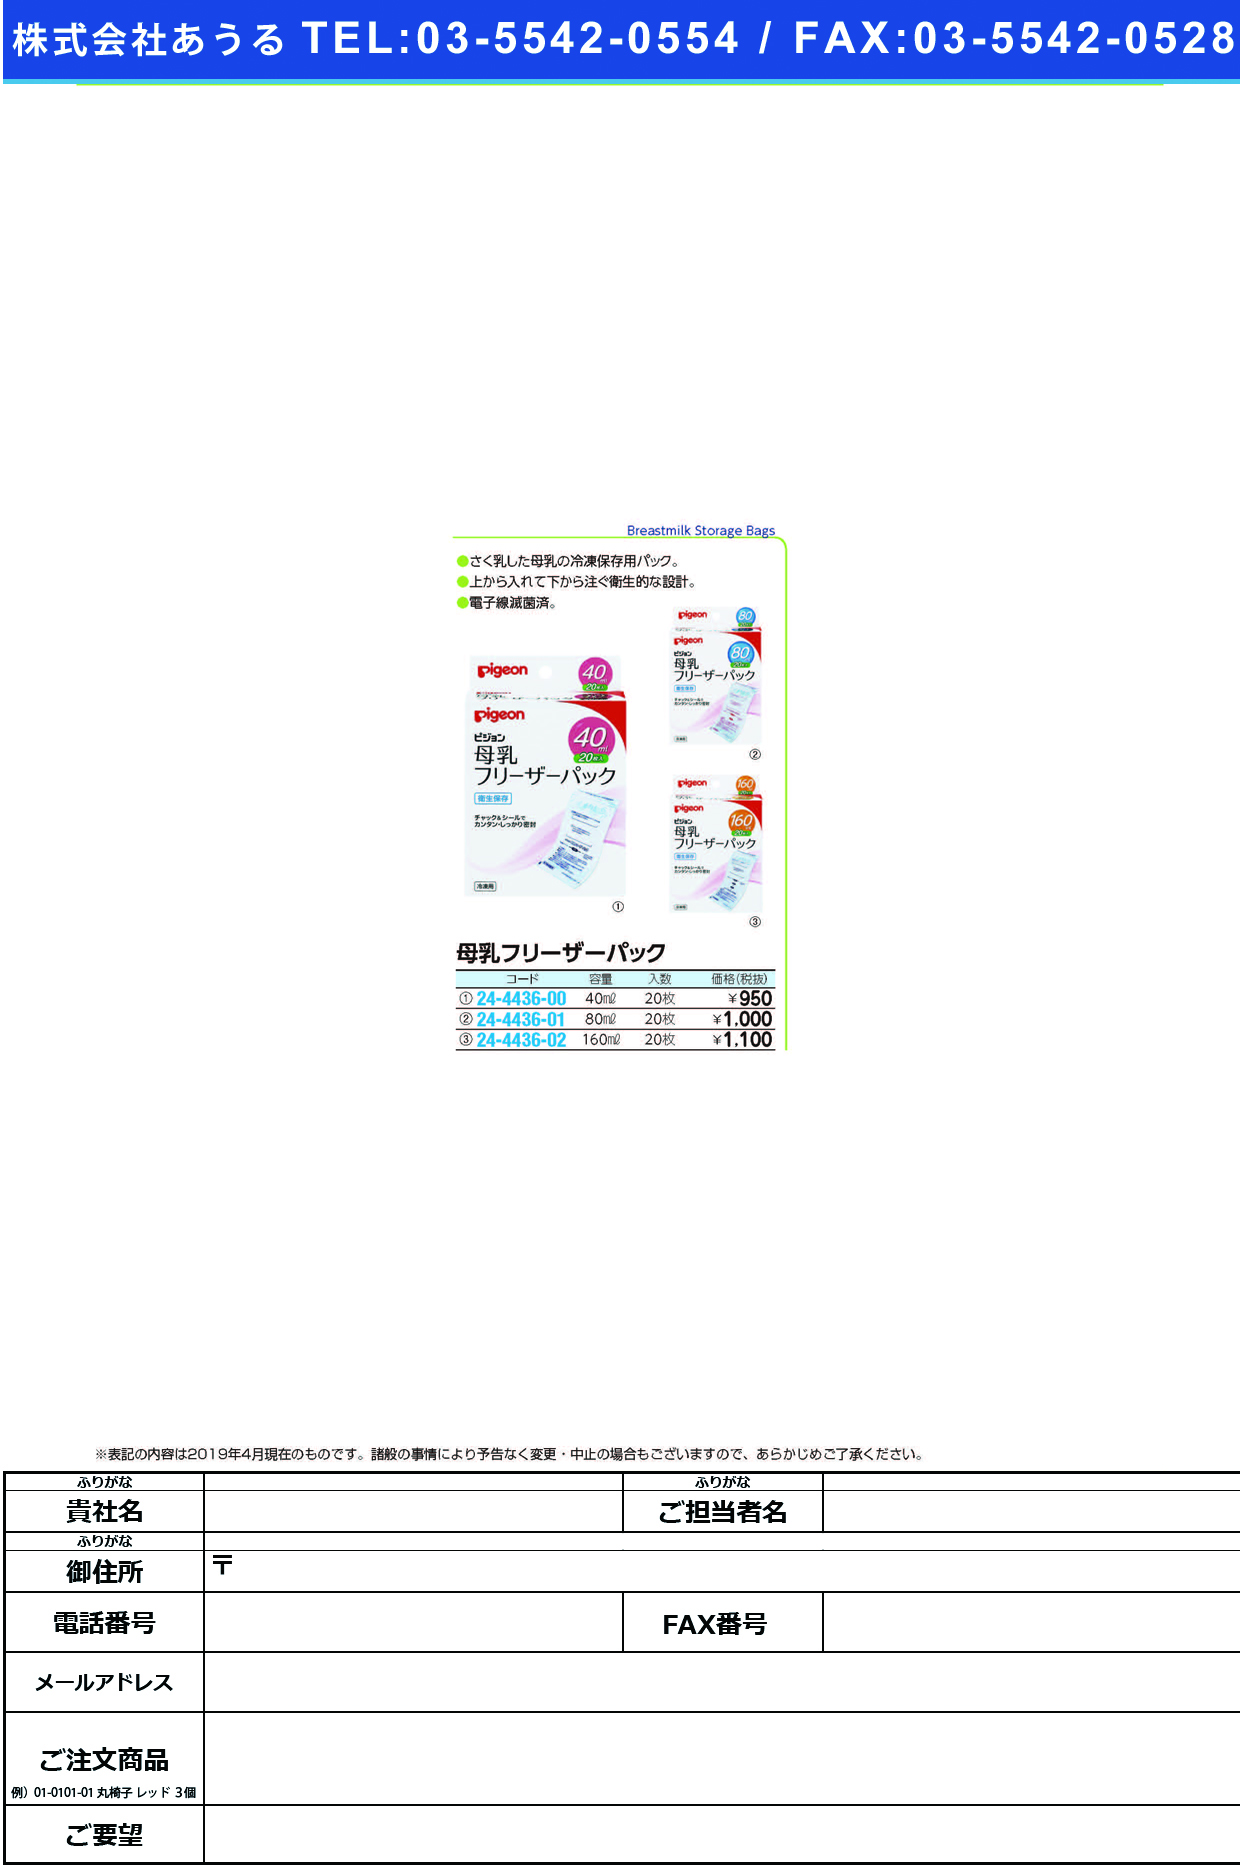 (24-4436-00)母乳フリーザーパック 16261(40ML)20ﾏｲｲﾘ ﾎﾞﾆｭｳﾌﾘｰｻﾞｰﾊﾟｯｸ(ピジョン)【1個単位】【2019年カタログ商品】